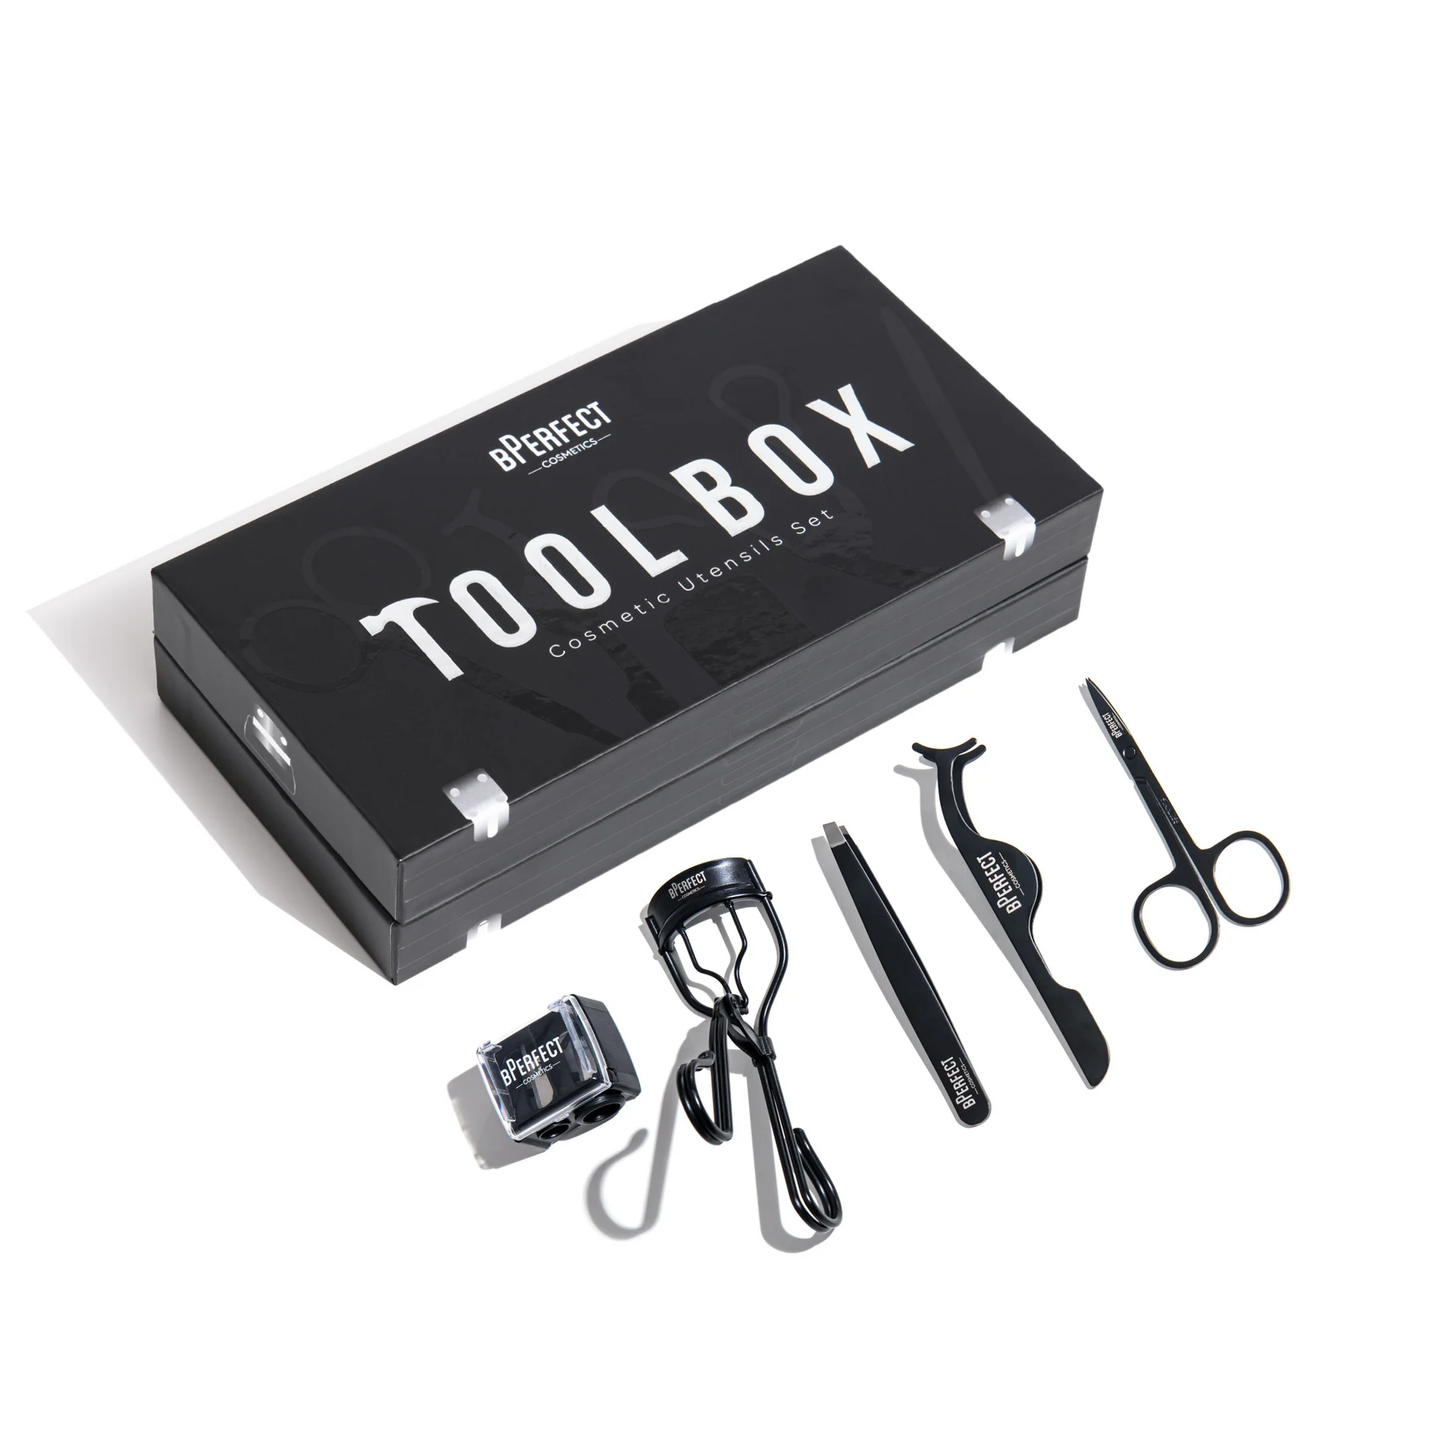 Bperfect Tool Box - Cosmetic Utensil Set